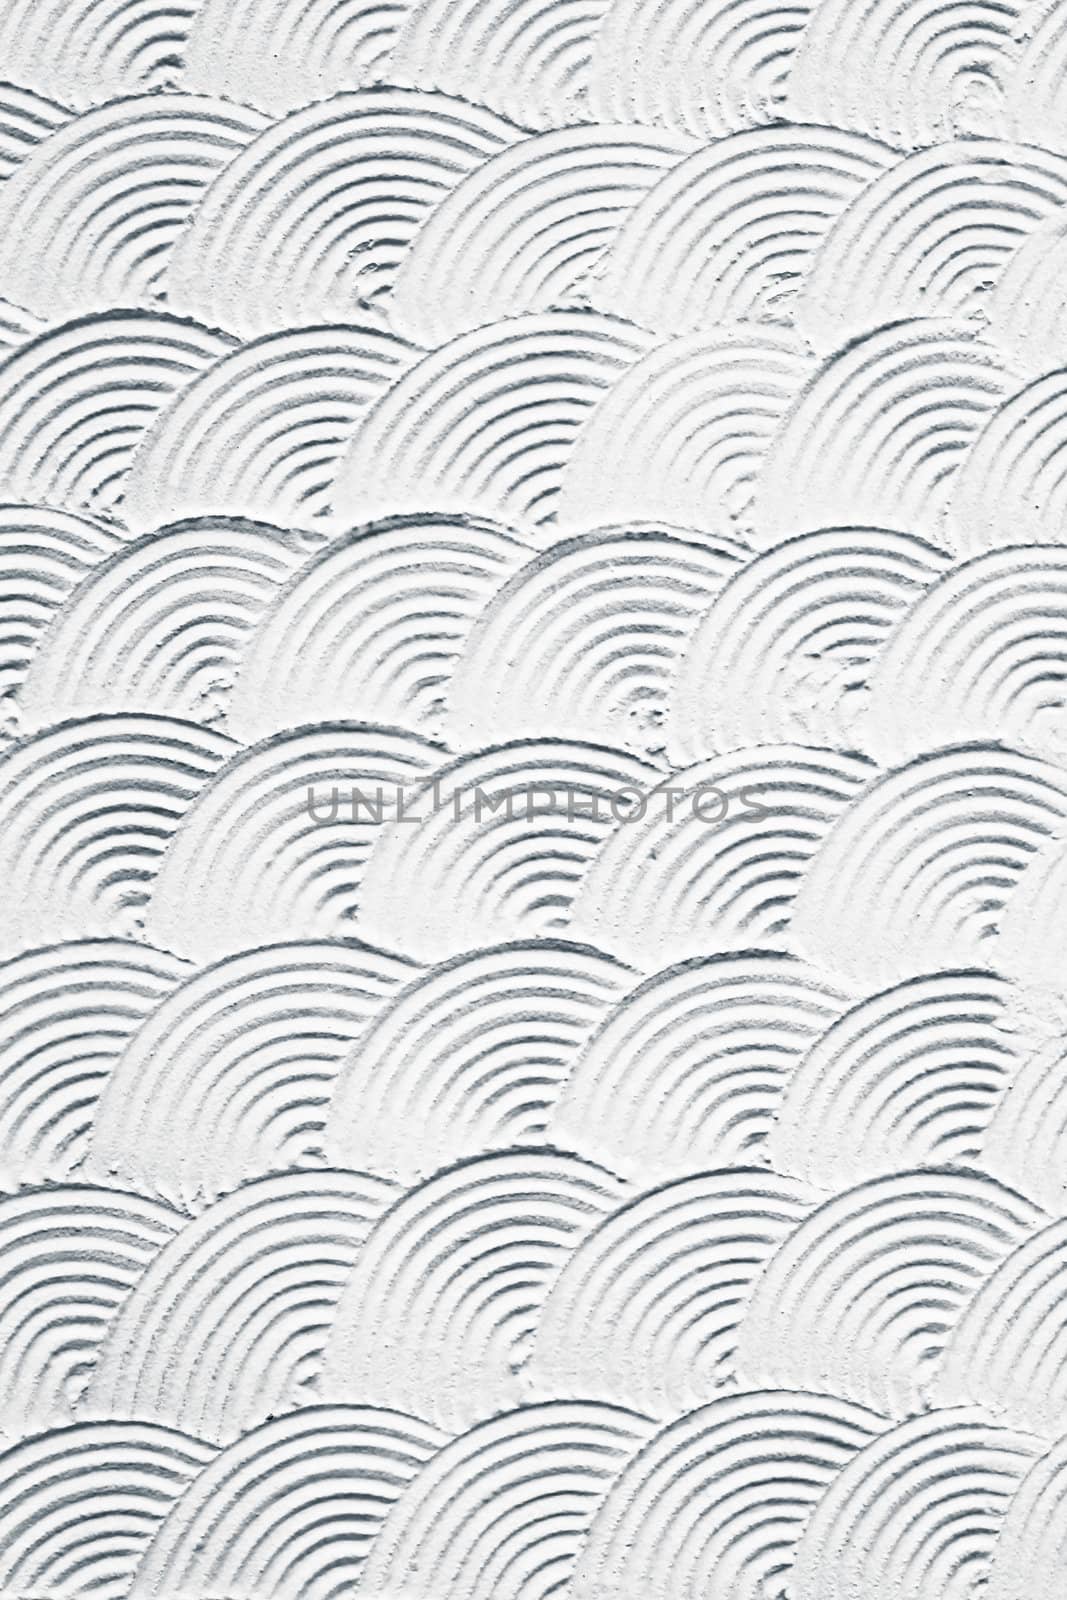 Plaster pattern by trgowanlock